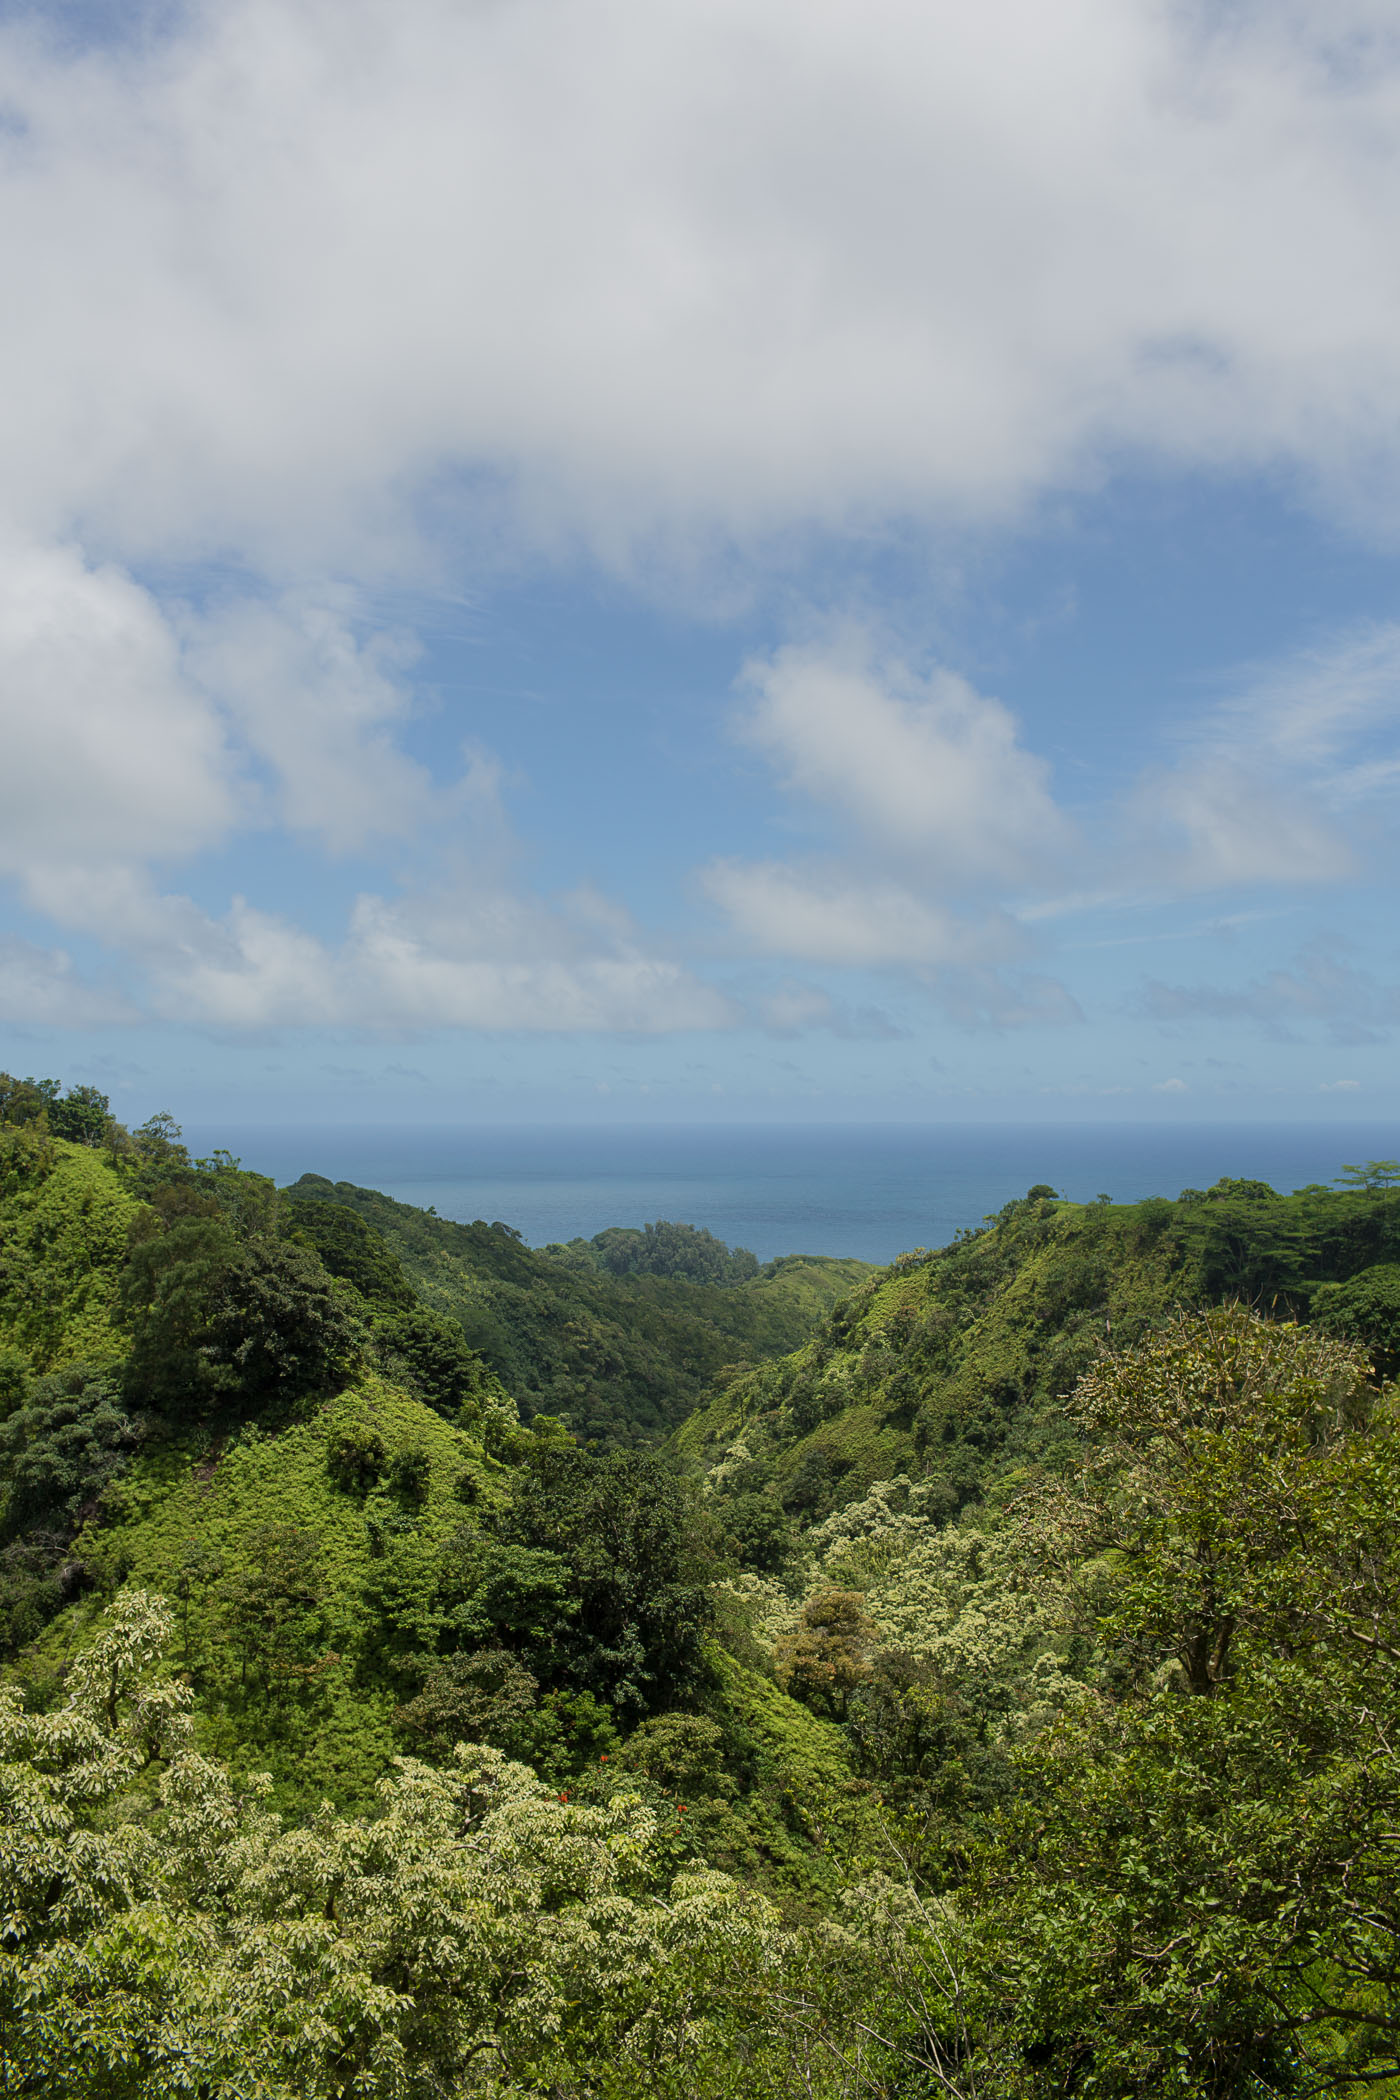 Road to Hana on Island of Maui